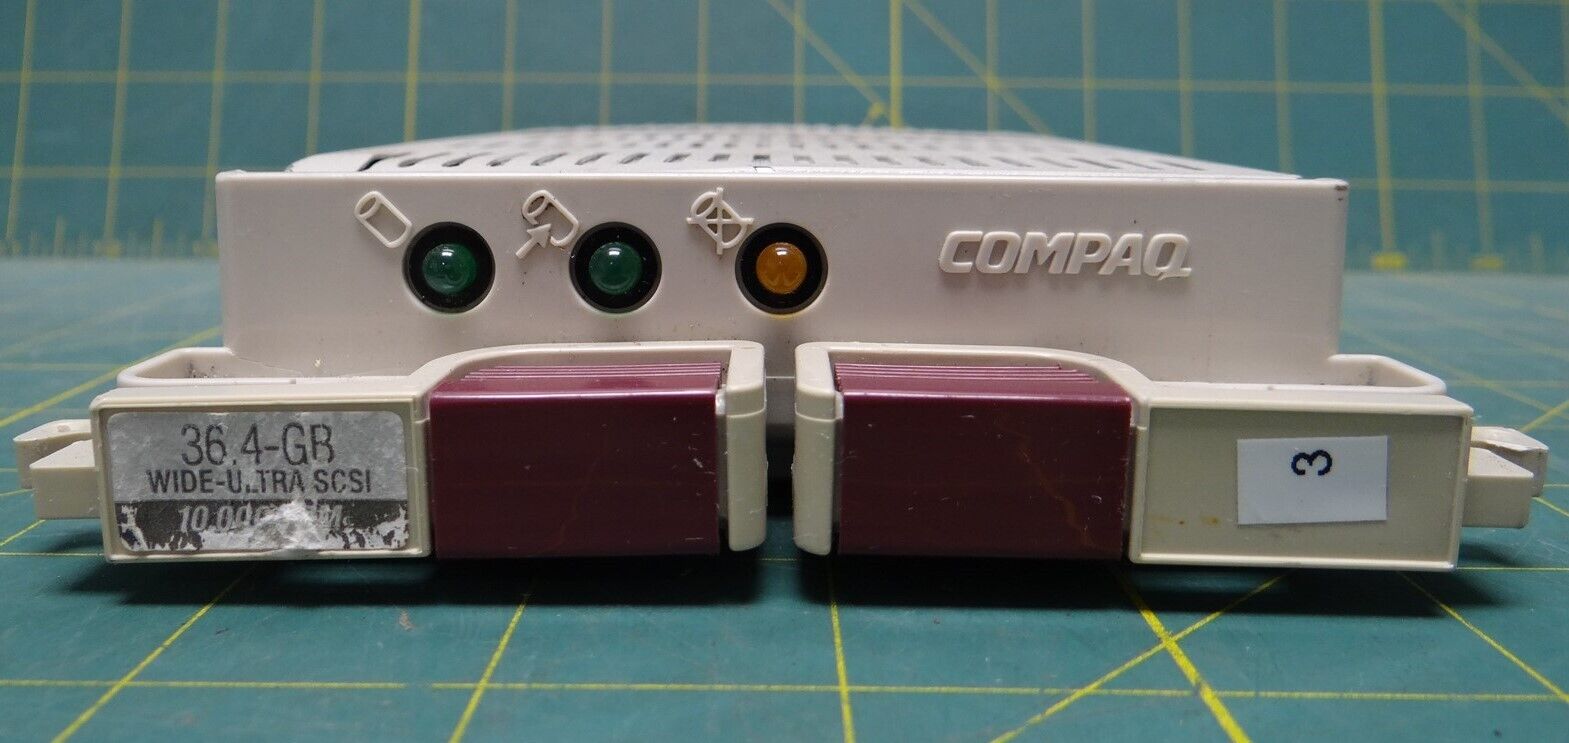 Compaq Ultra SCSI Metal Caddy/Tray & Drive 36.4 GB Compaq Drives